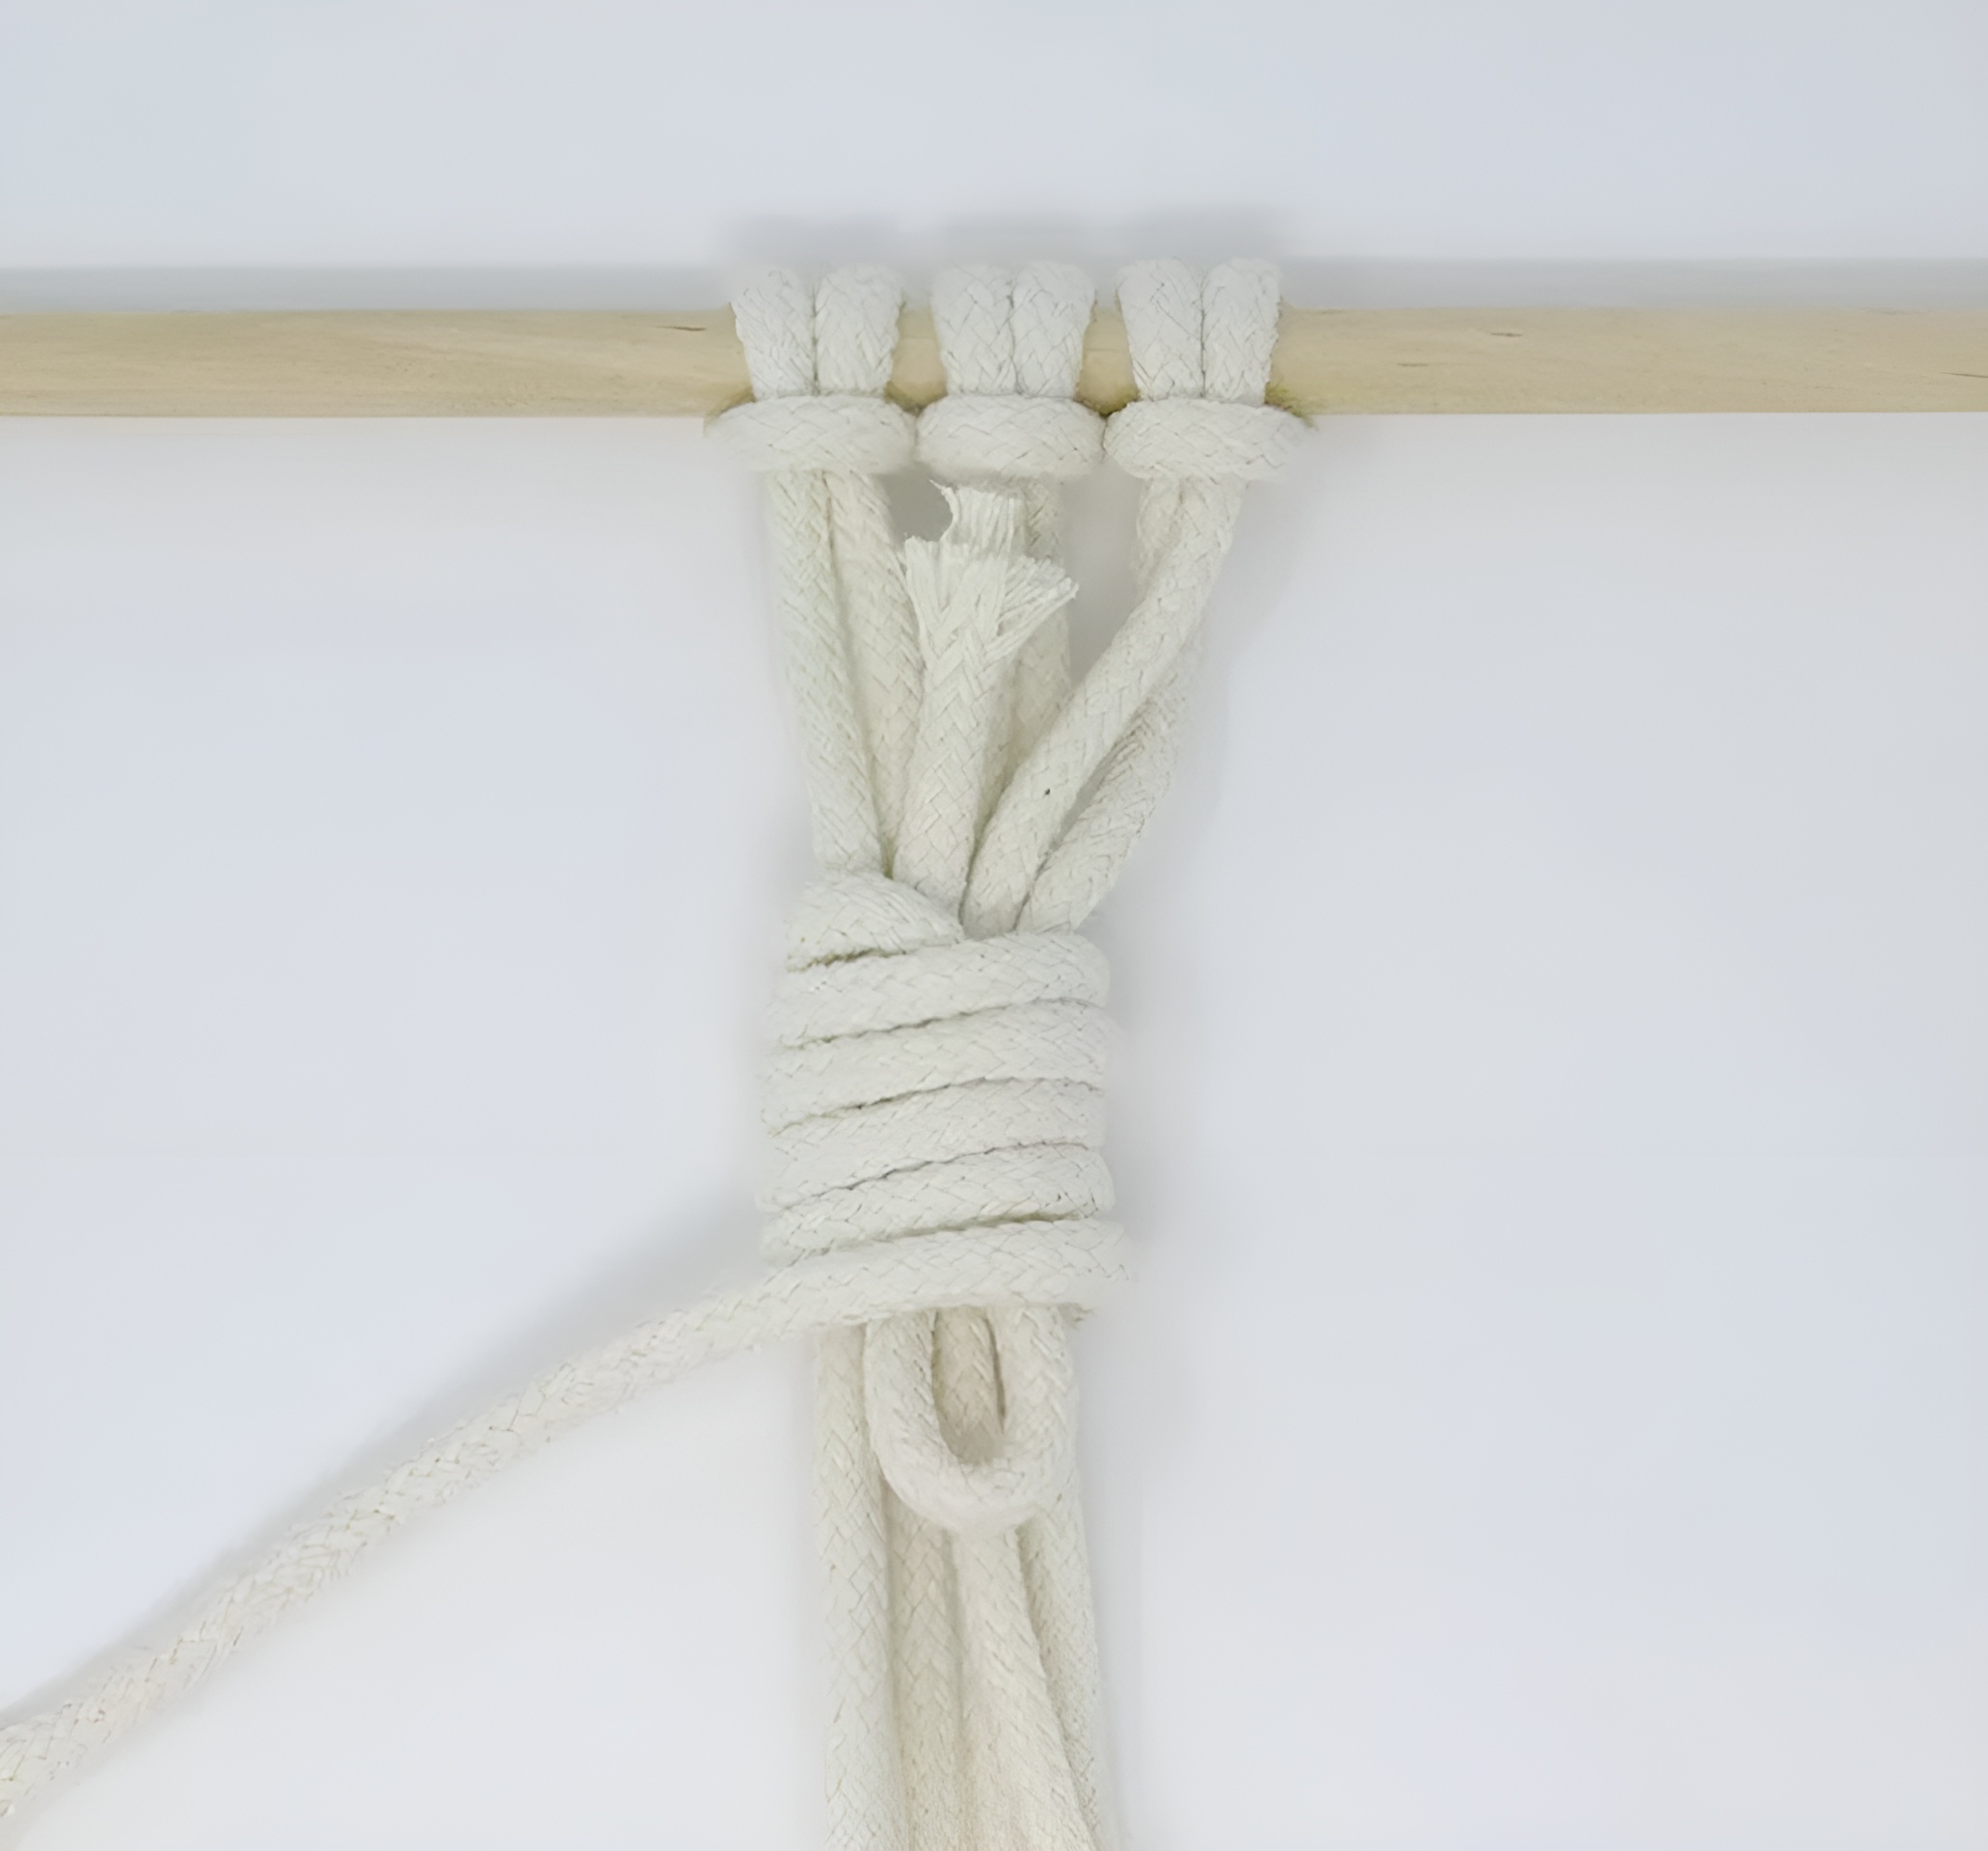 Luồn phần cuối của dây quấn qua vòng ở dưới cùng của khăn quấn.